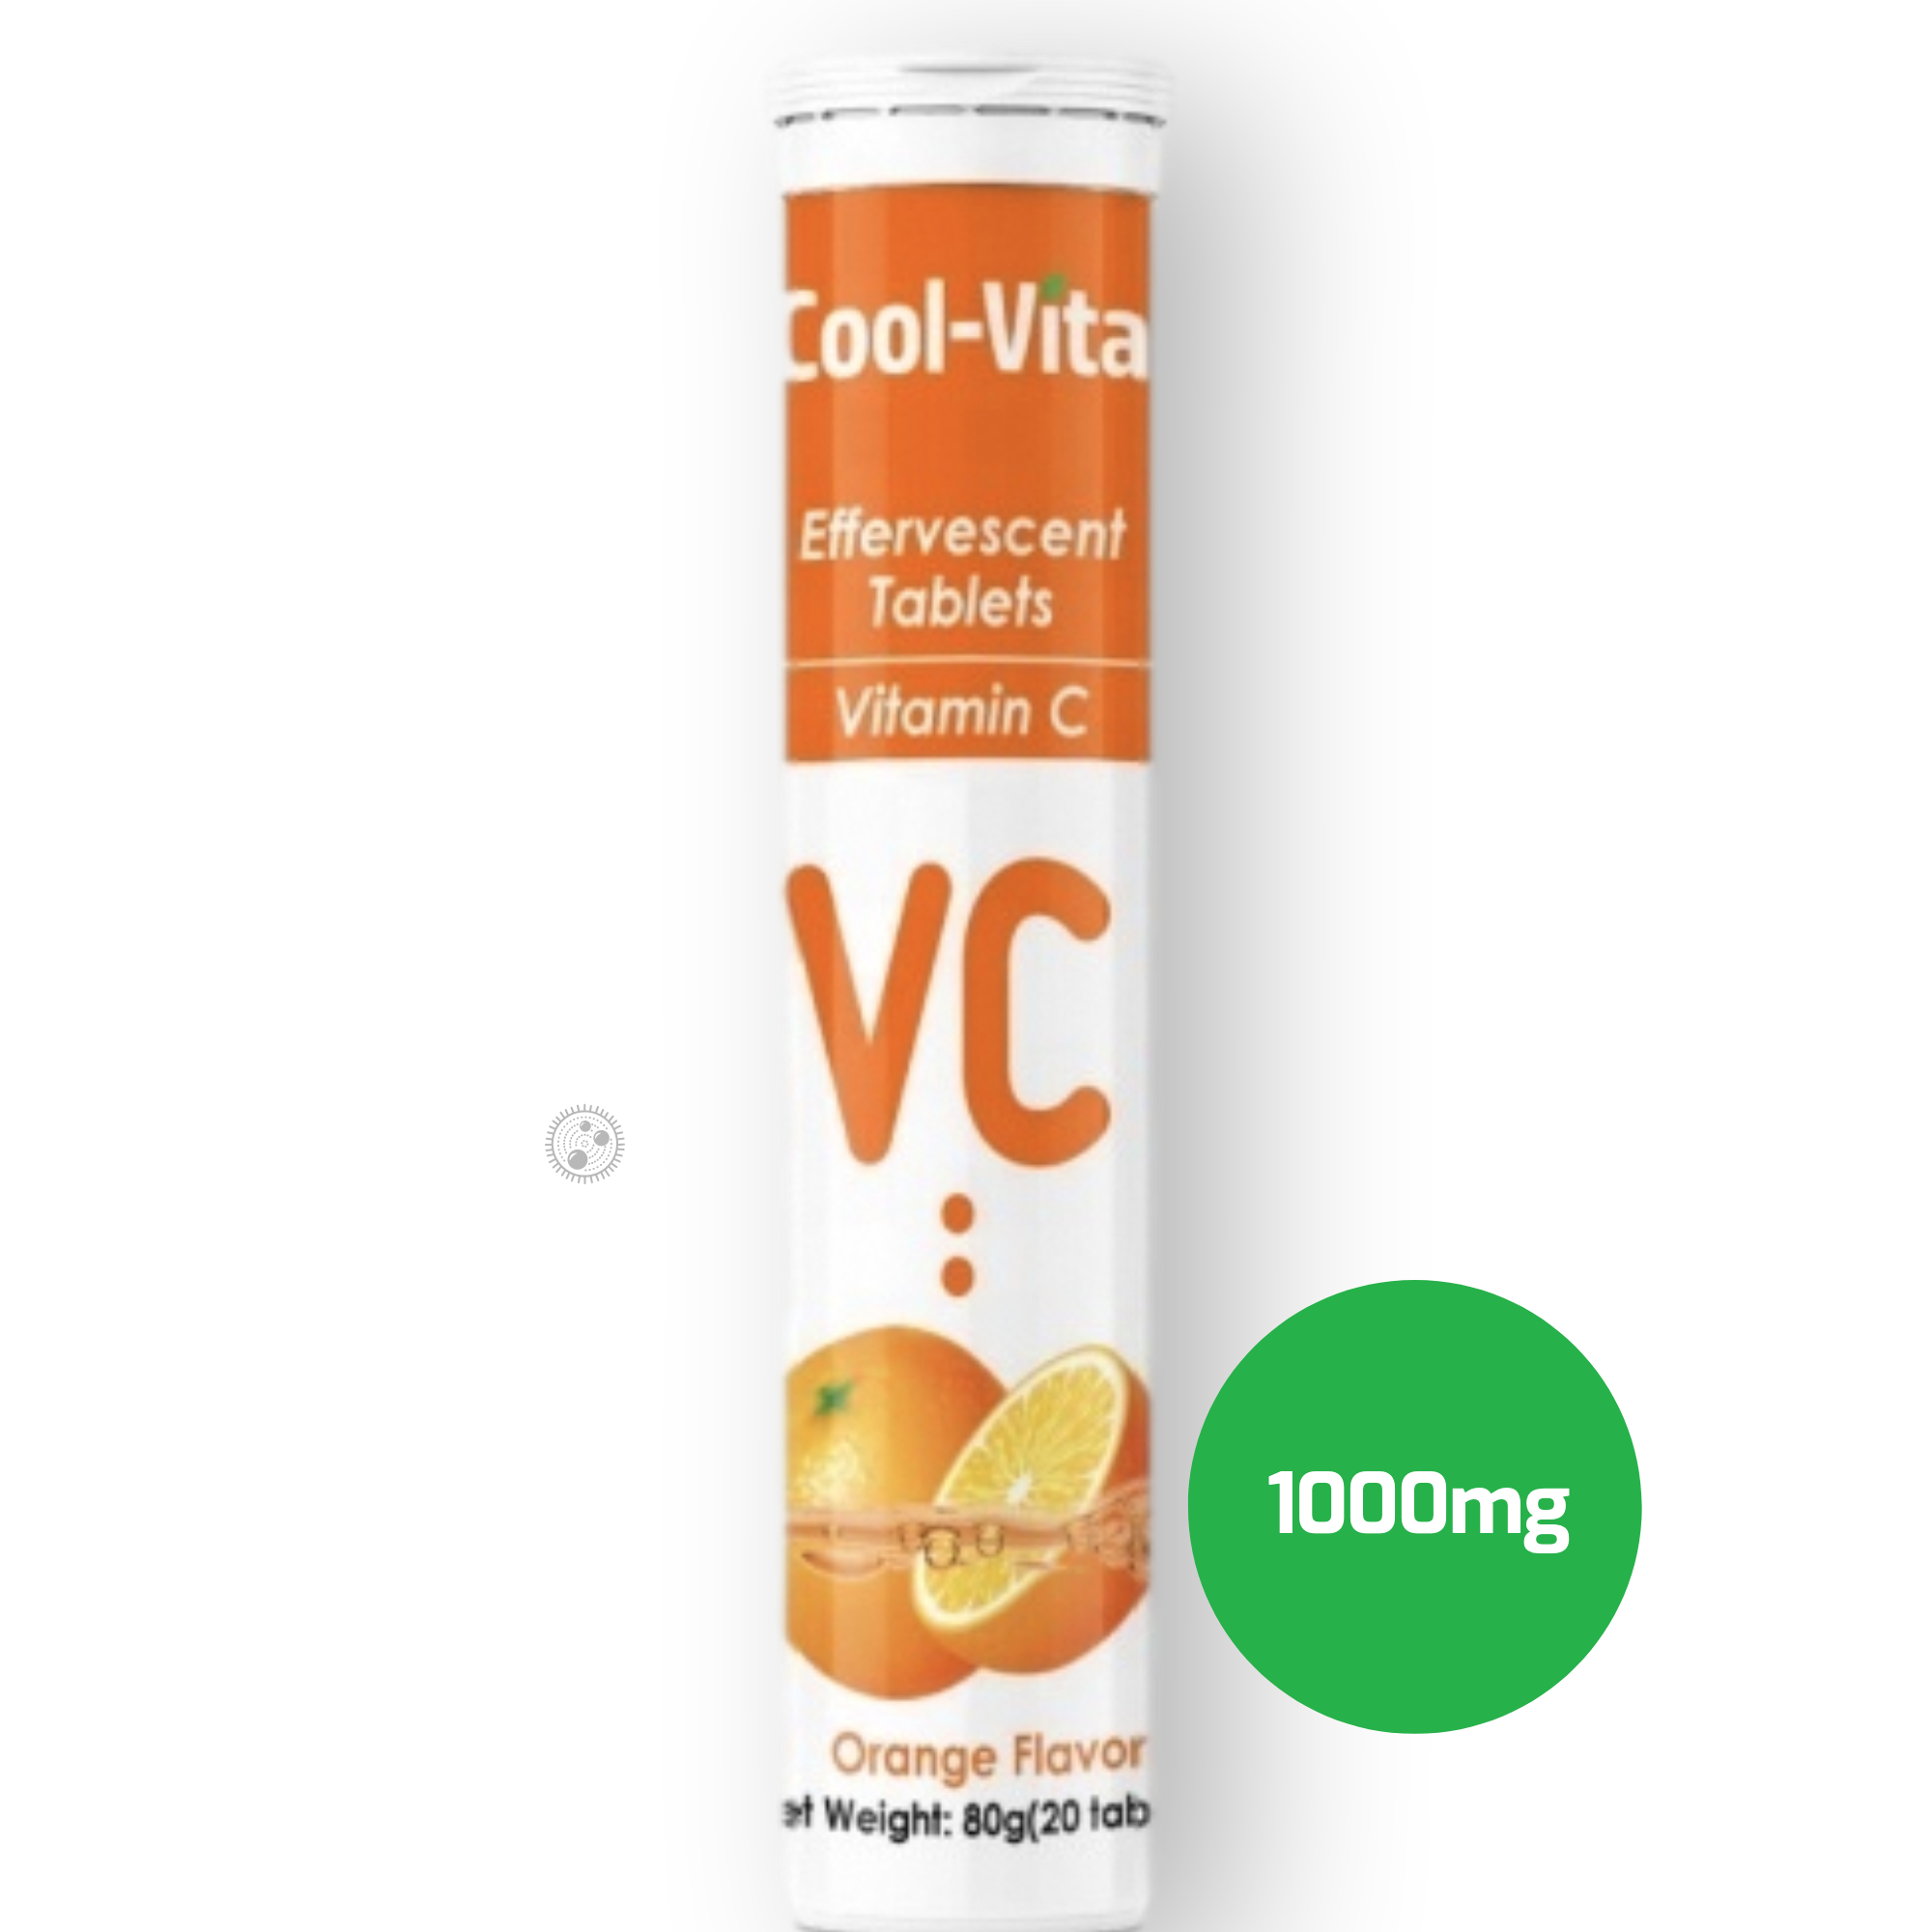 Cool-Vita Vitamin C Tabletten